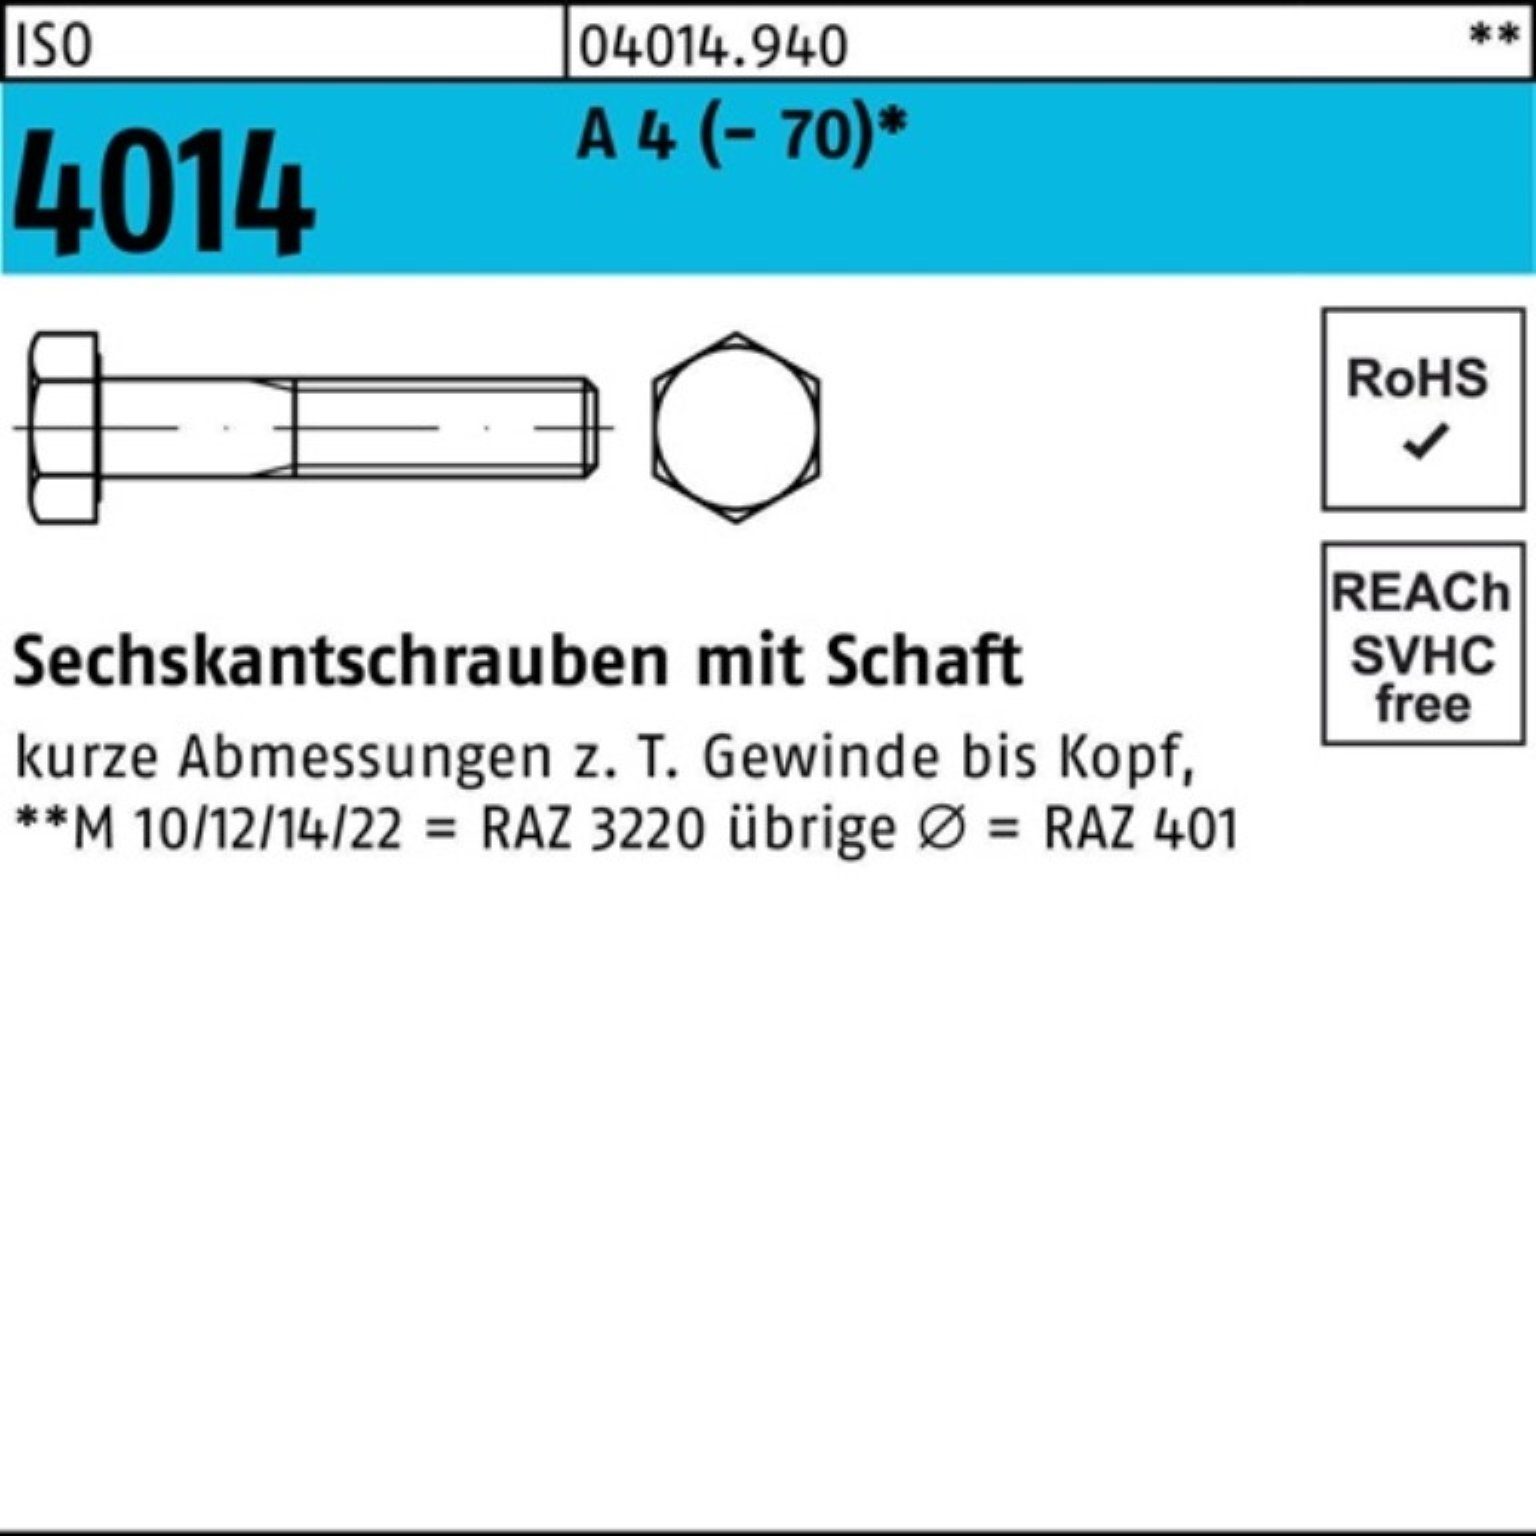 50 ISO Bufab Pack Sechskantschraube (70) 100er 4014 Schaft A 95 Sechskantschraube 4 St M10x